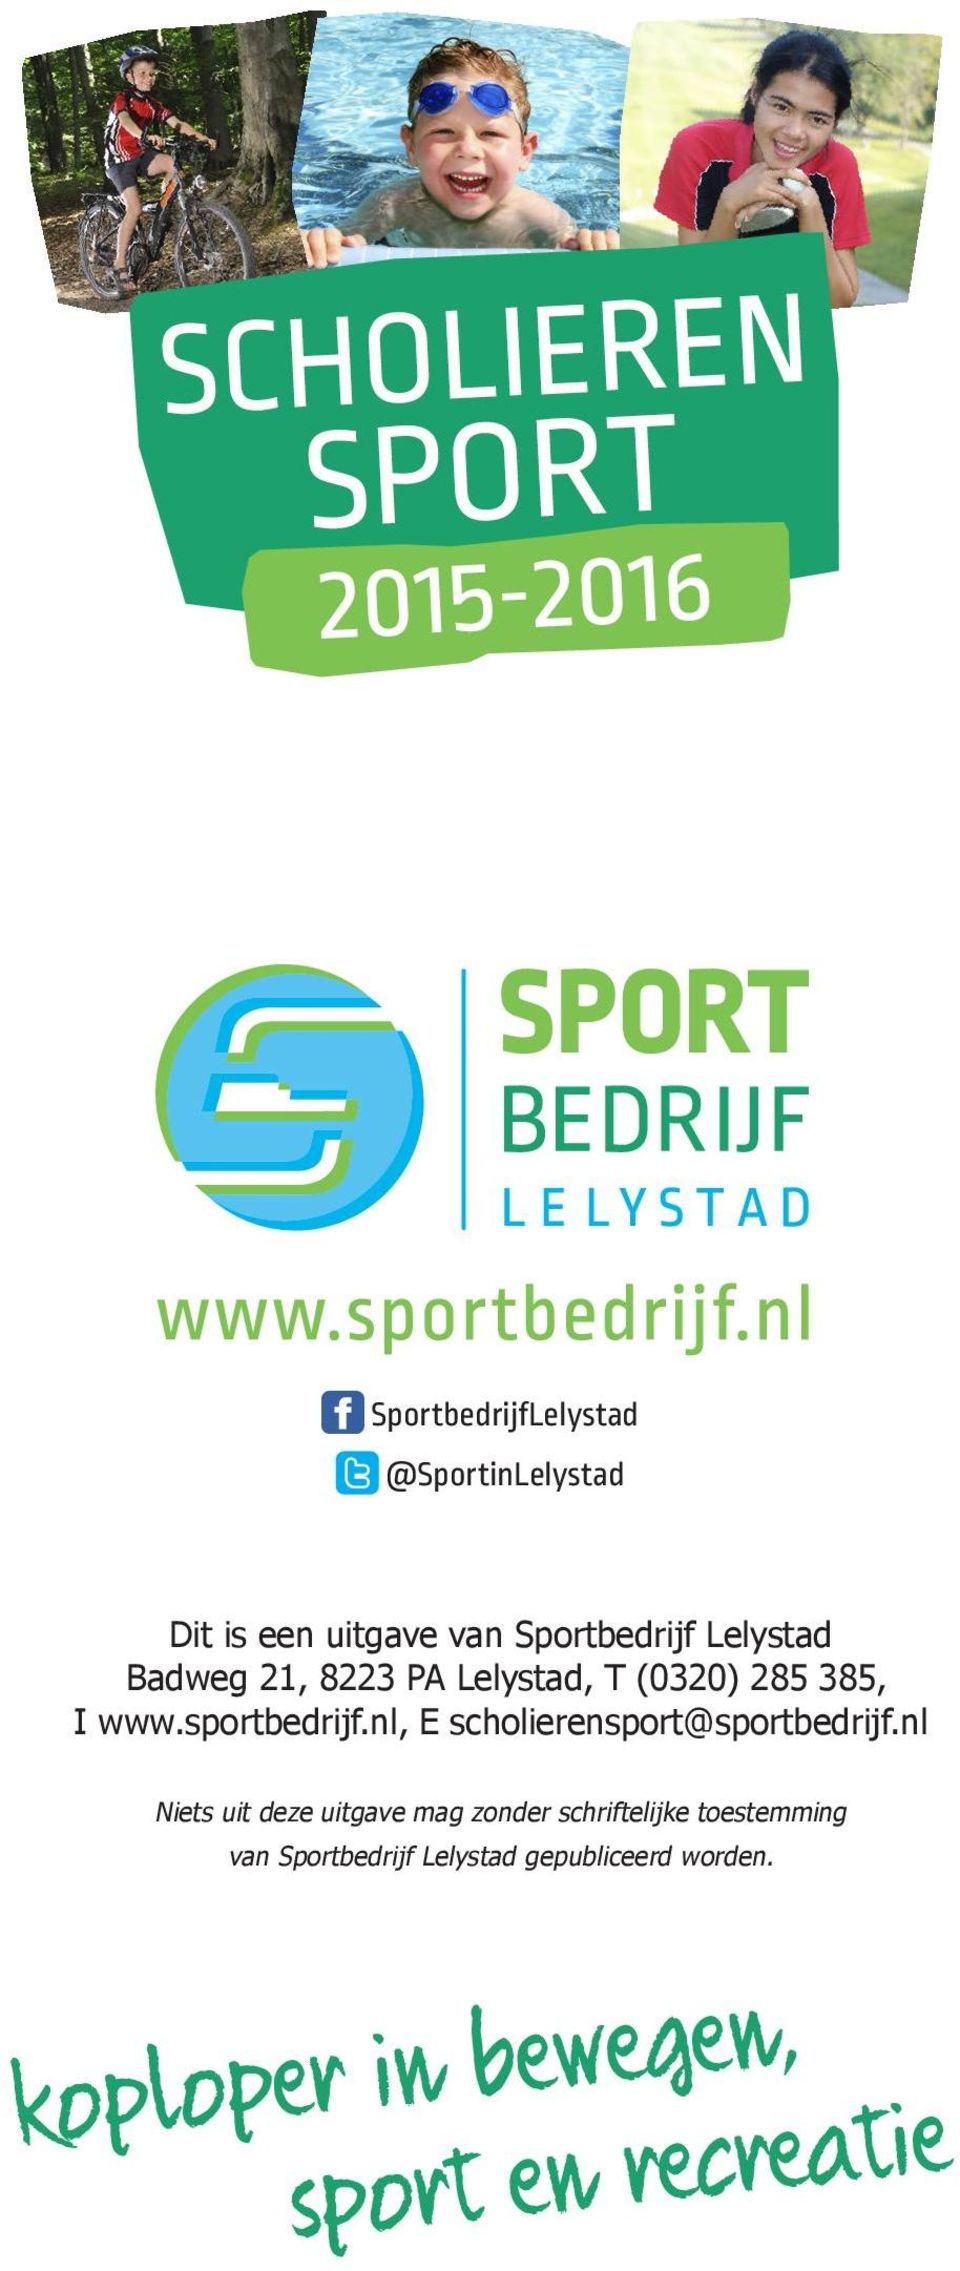 sportbedrijf.nl, E scholierensport@sportbedrijf.